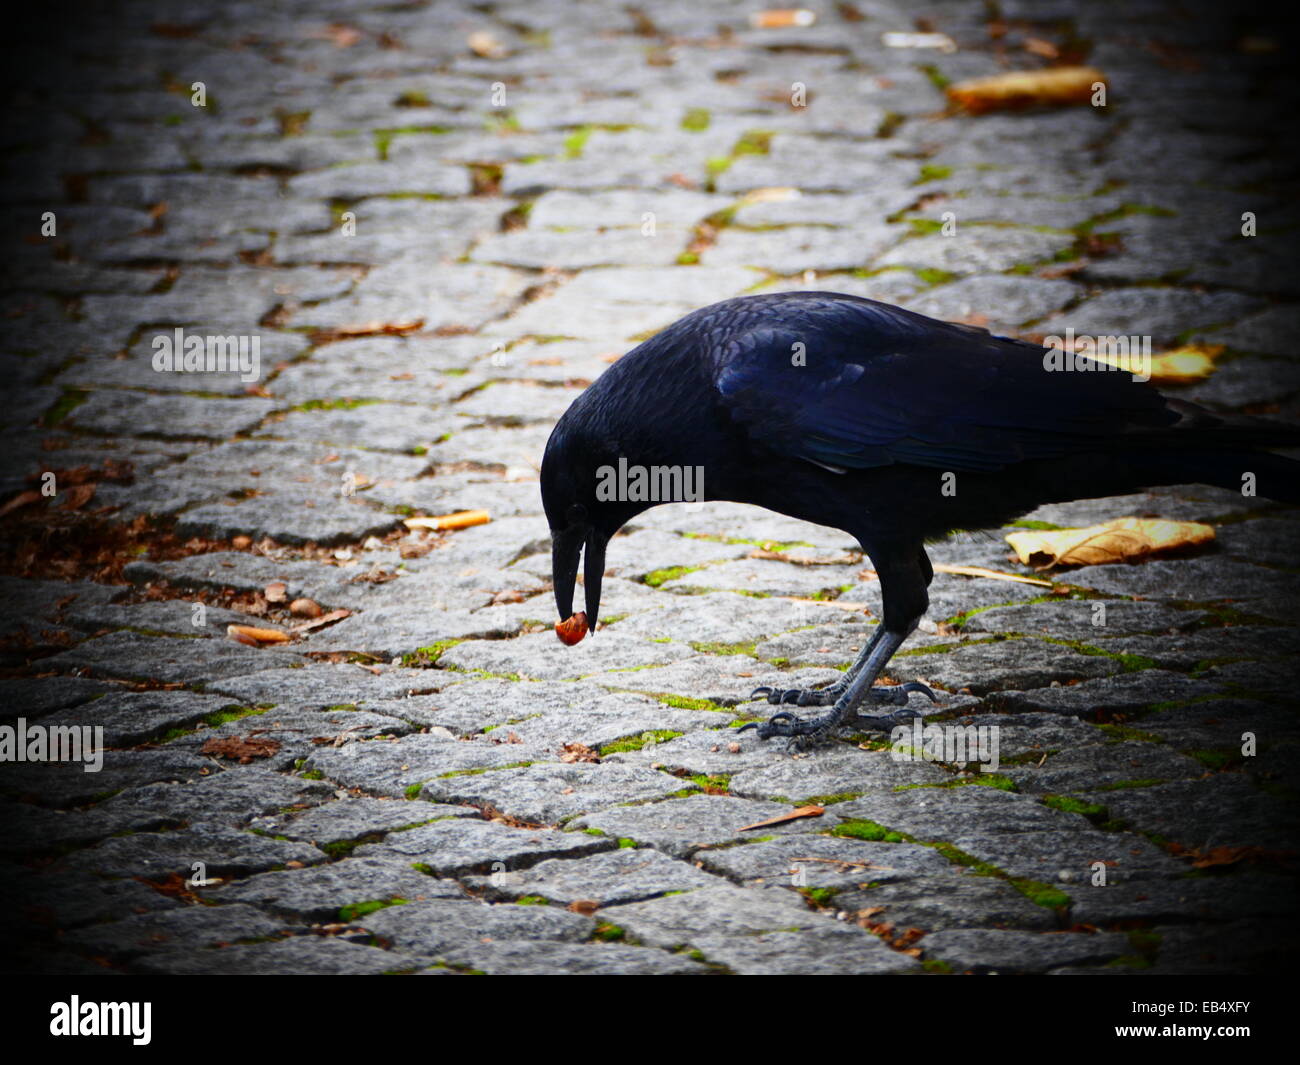 Oiseau Noir corbeau corbeau mal Cheatnut cas Banque D'Images